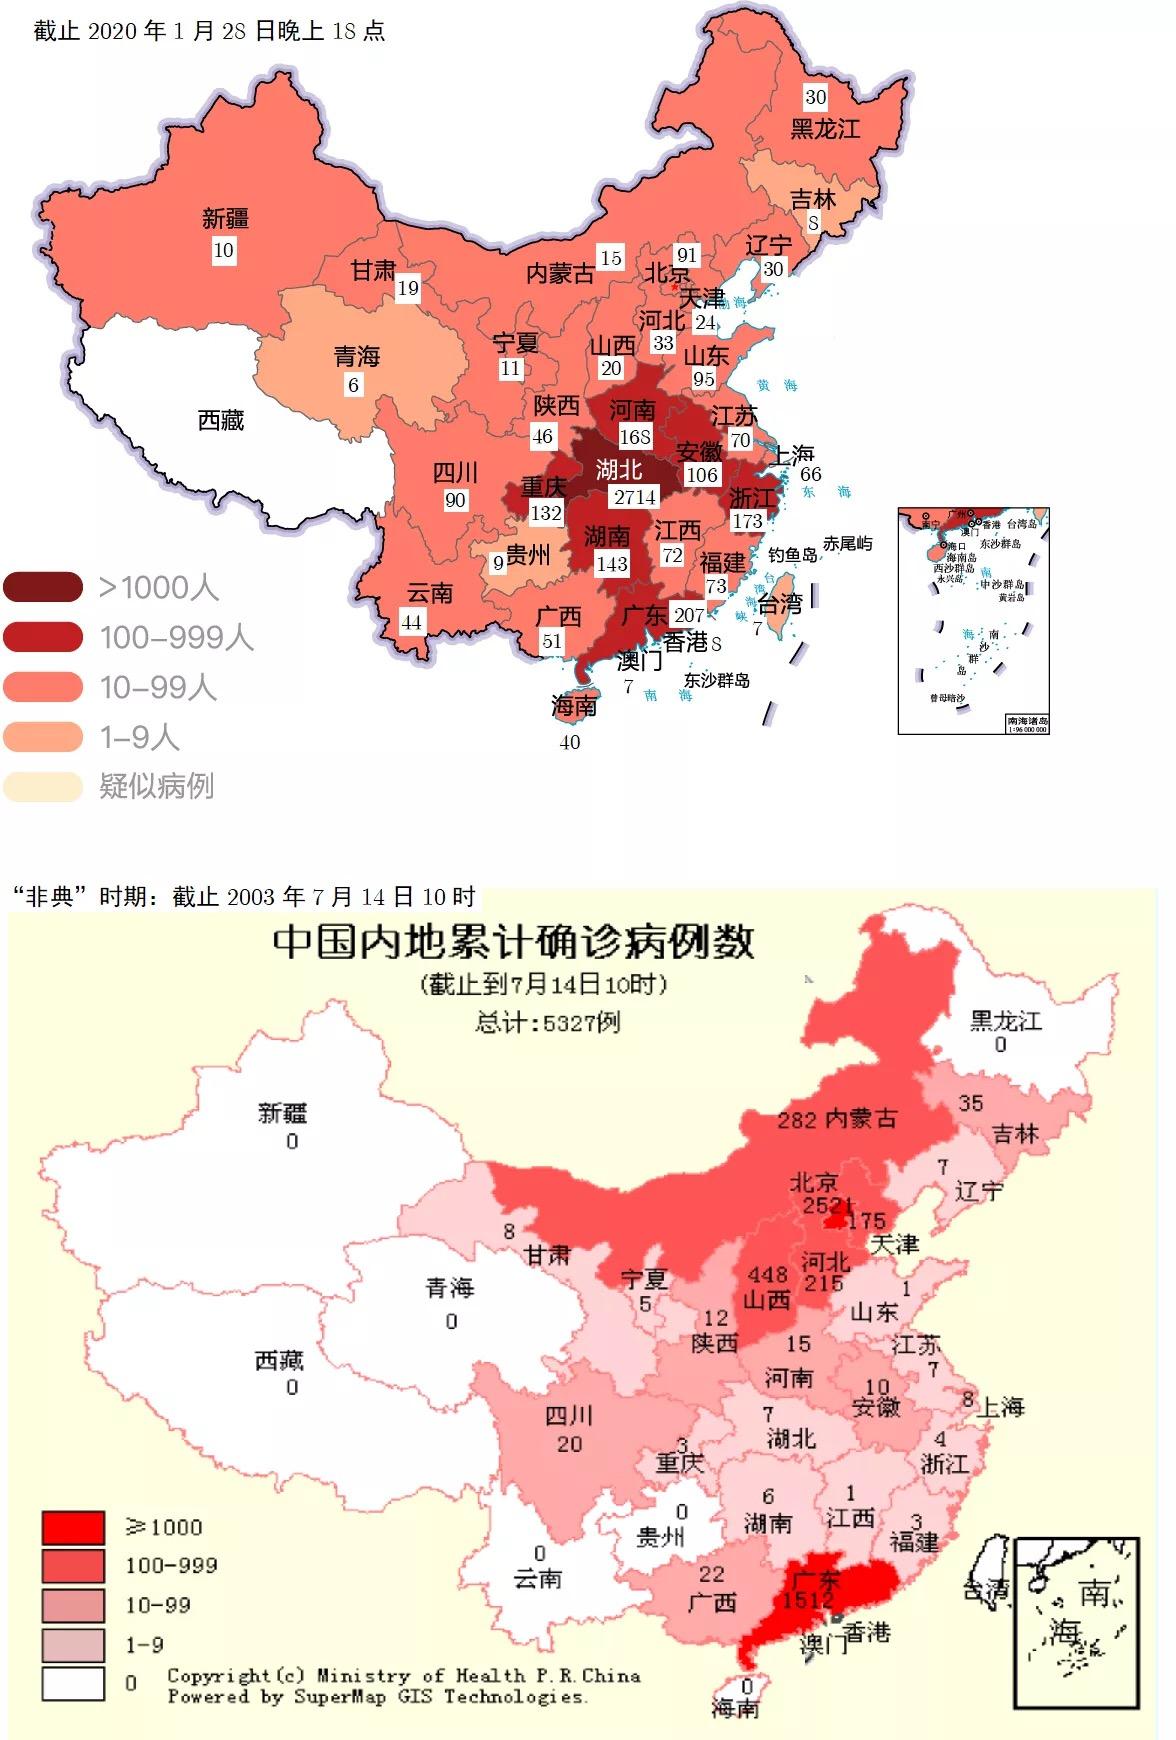 回顾2003年的非典疫情,重灾区是华北地区(具体是北京与广东省,如下图